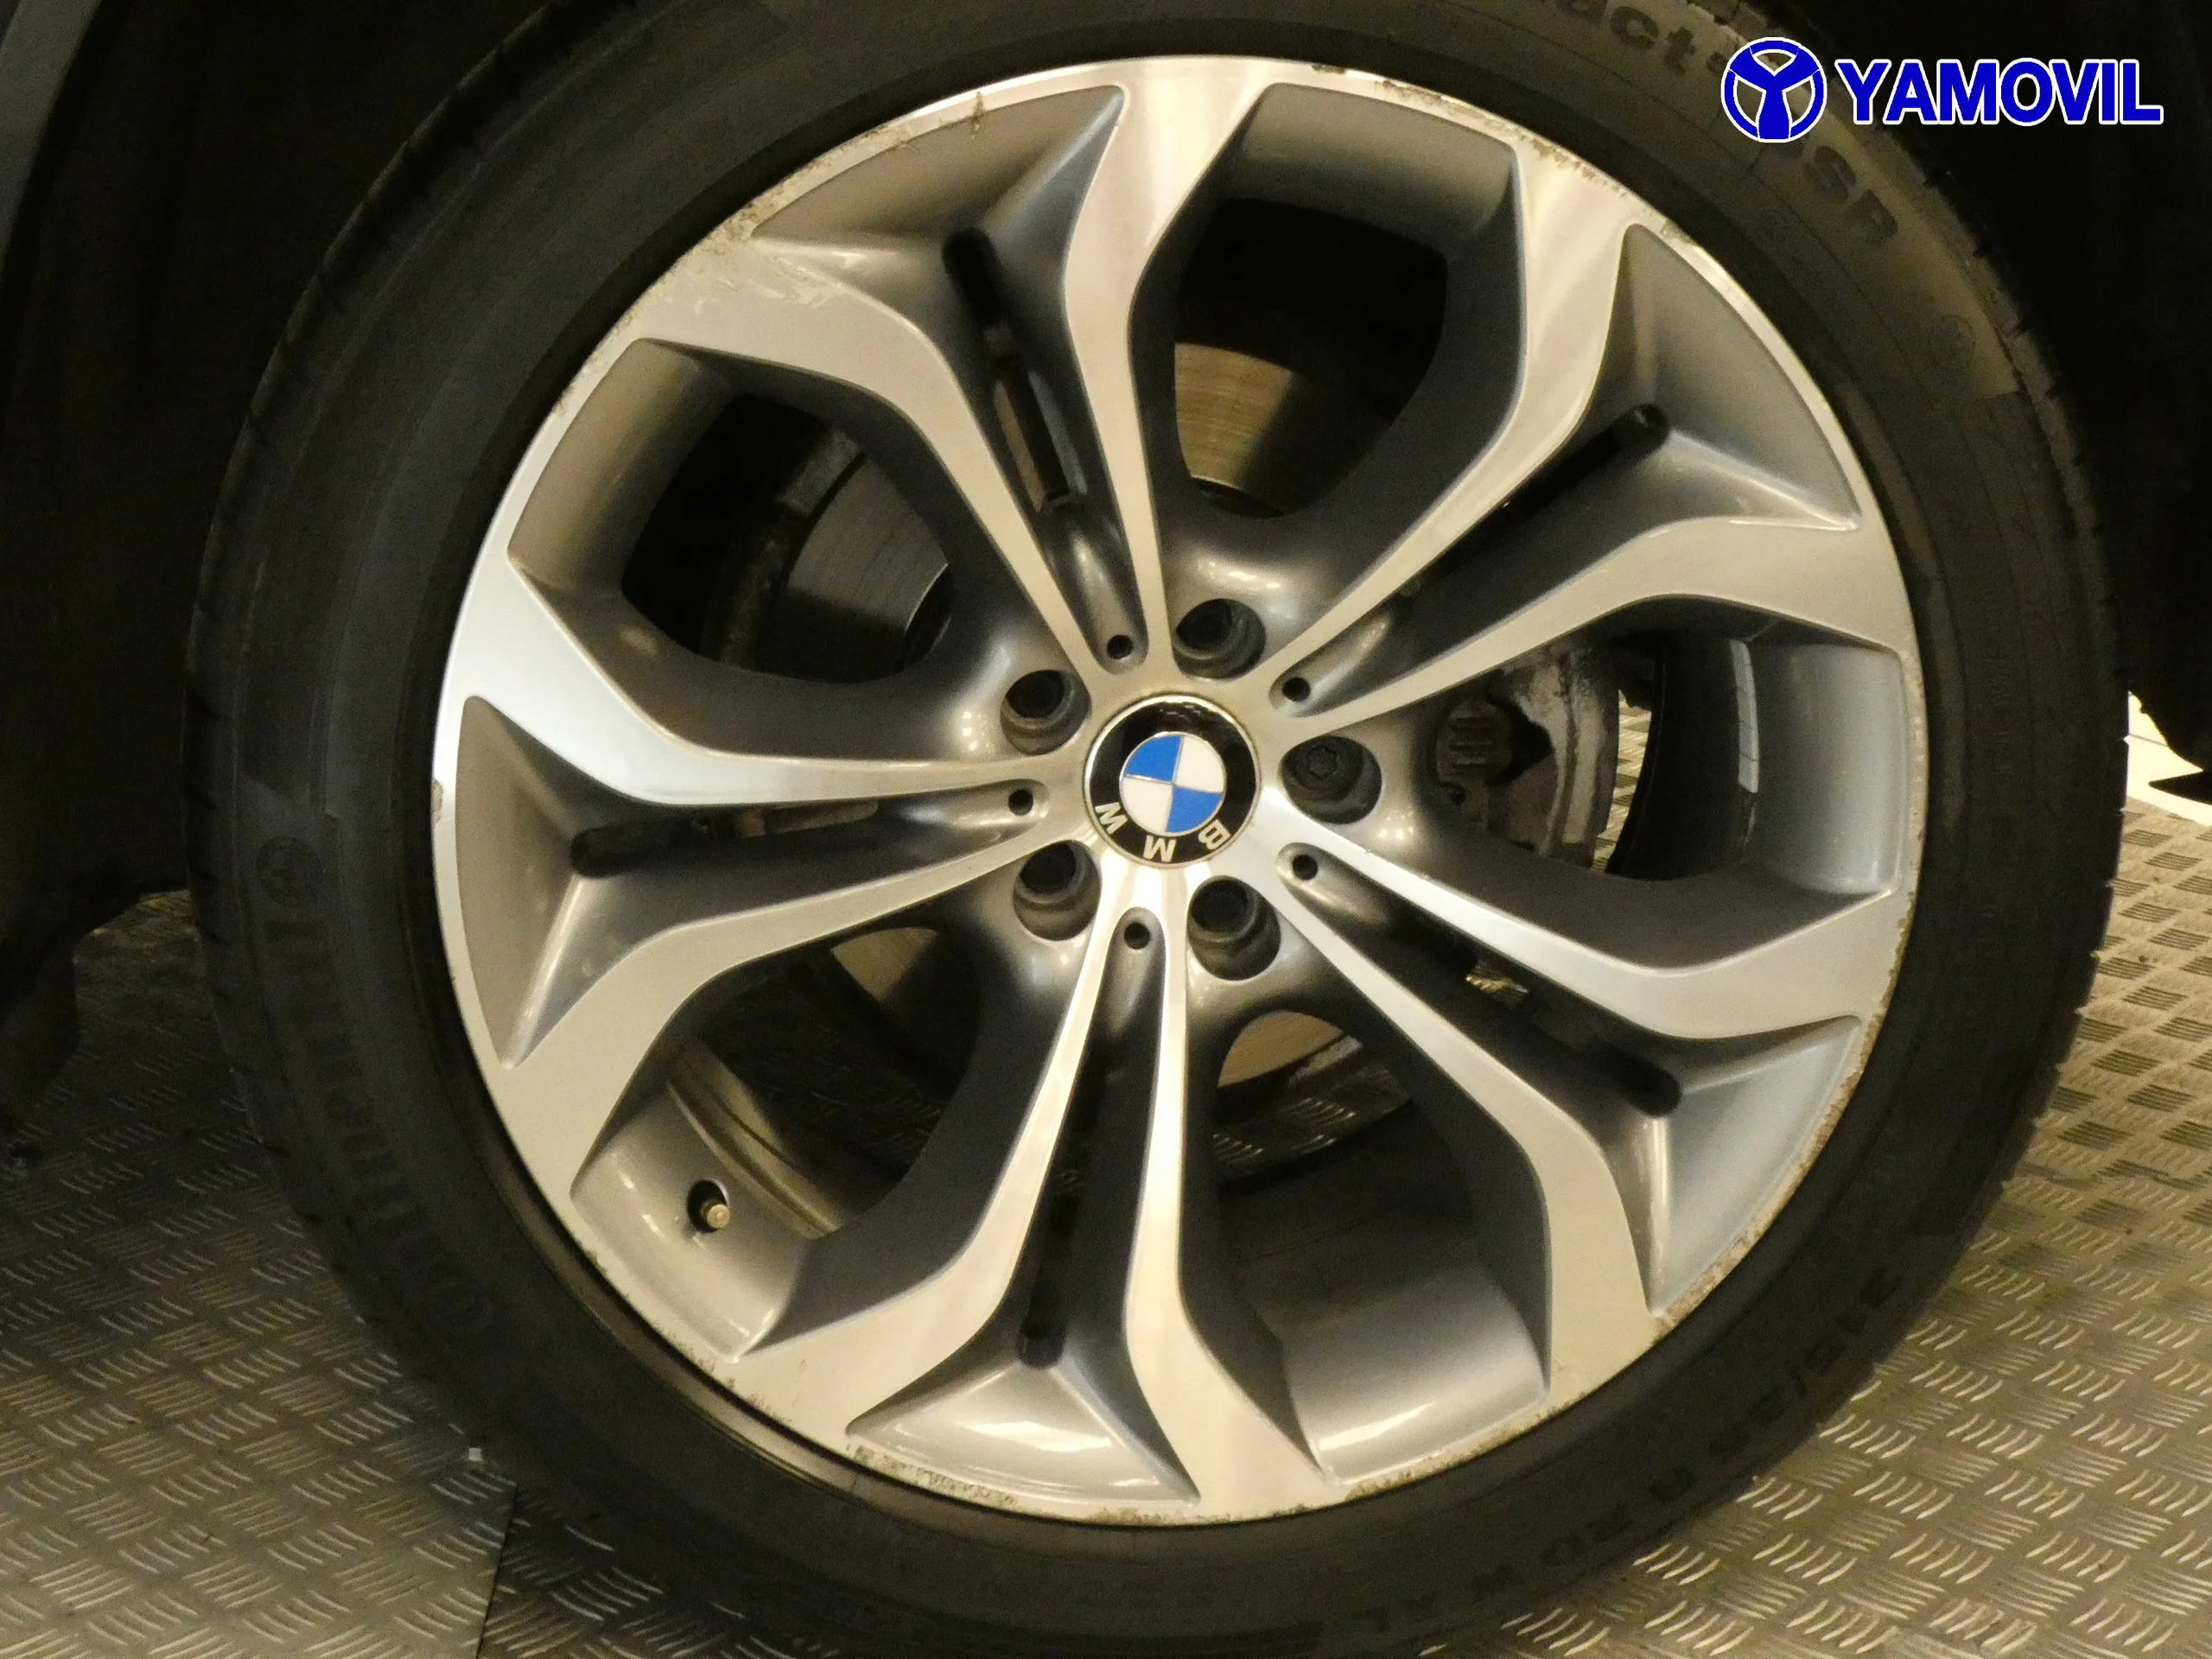 BMW X5 4.0D AUT. 5P - Foto 11